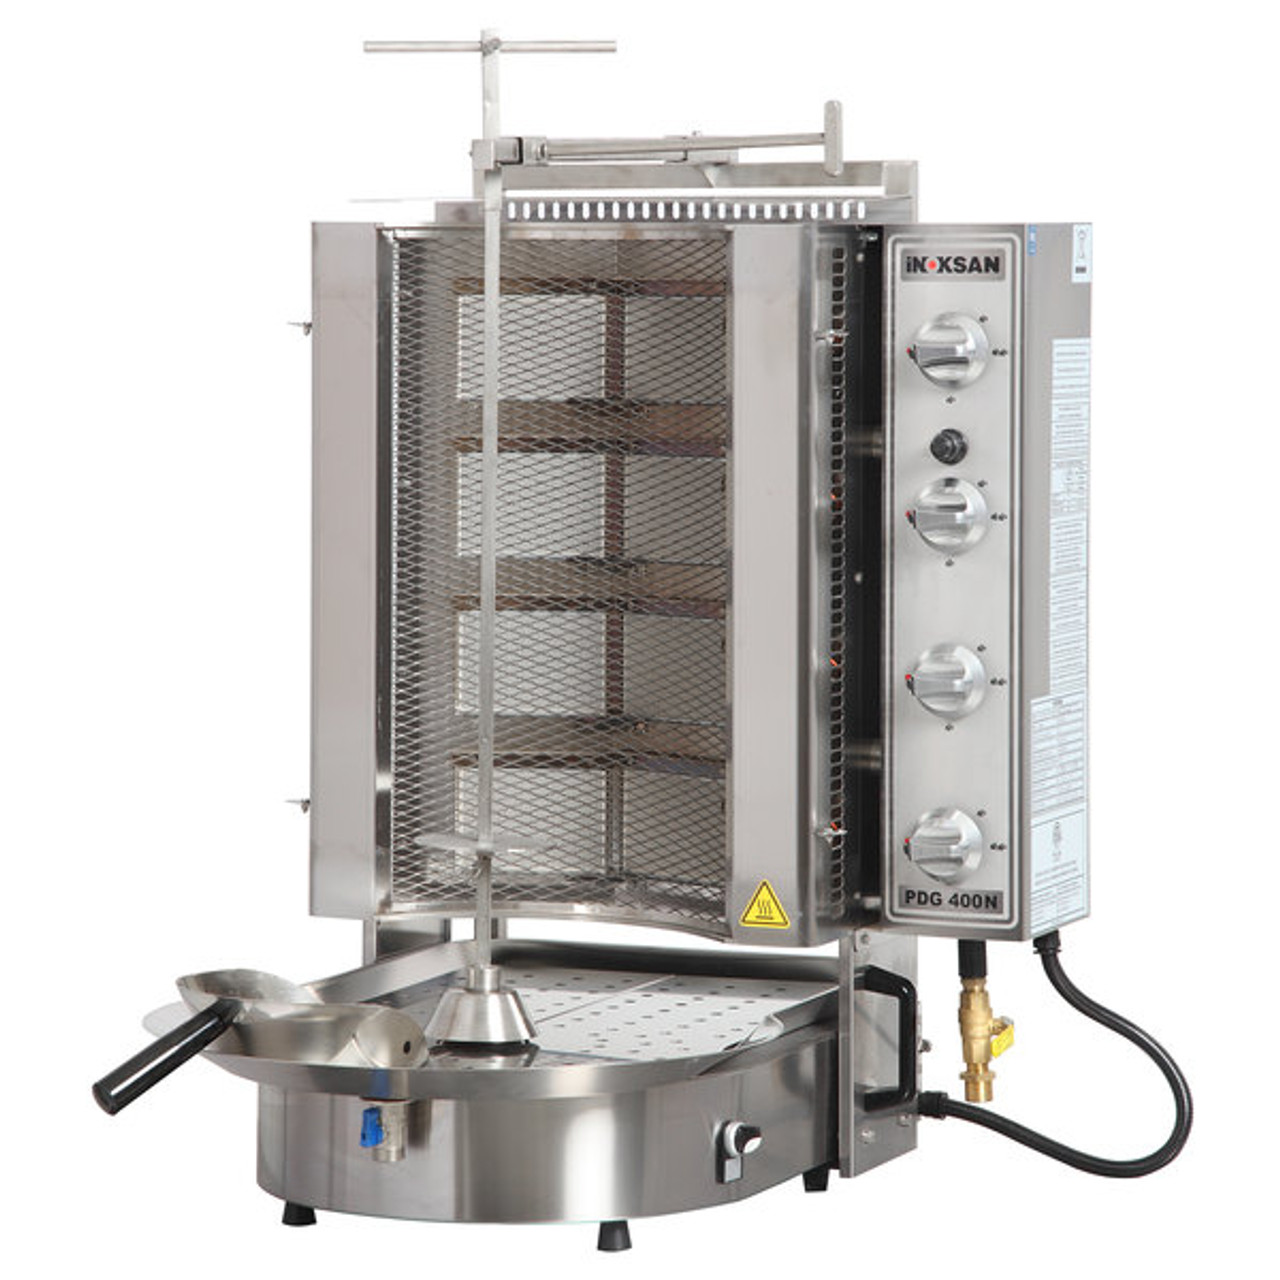 Doner Kebab Machine / Vertical Broiler with Mesh Shield - 20-130 lb. Capacity-Inoksan PDG 400NM  